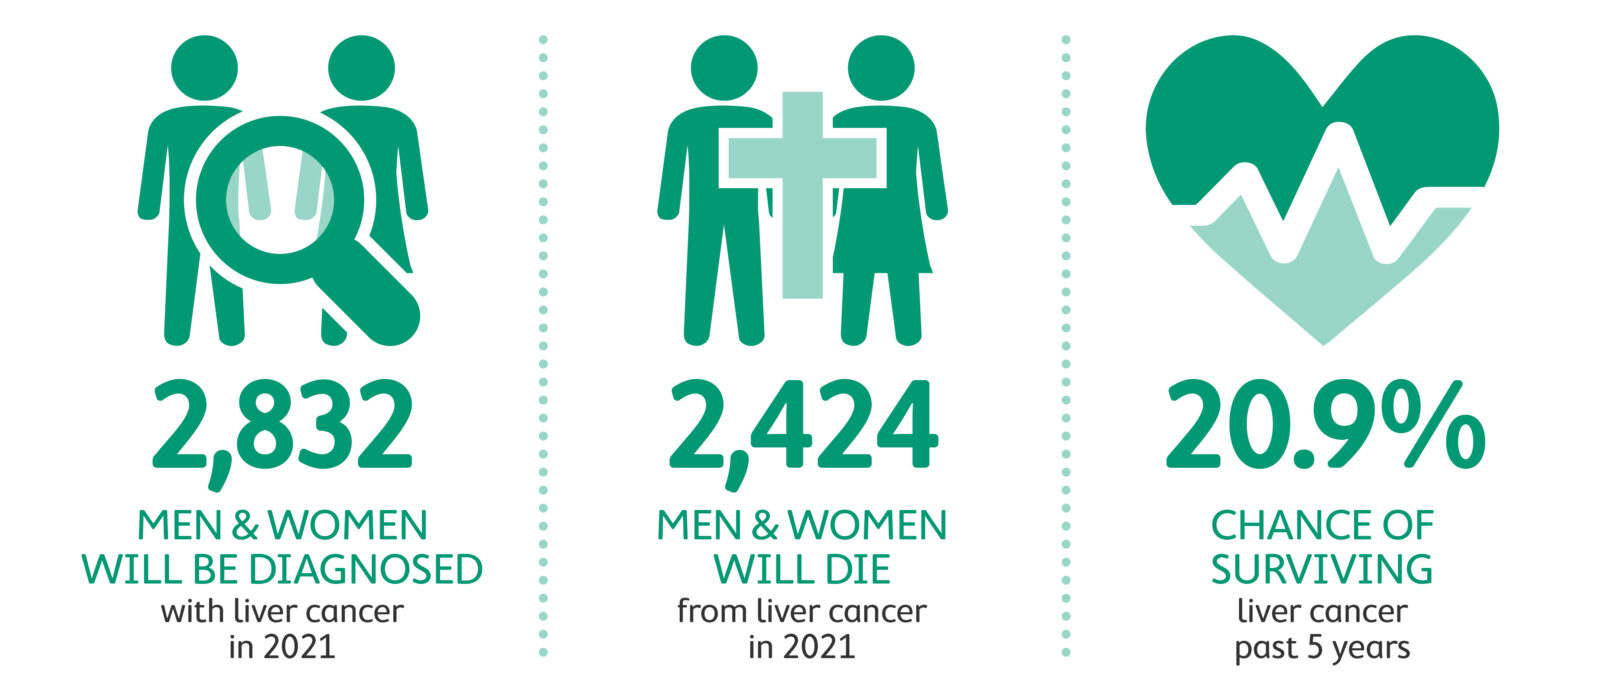 Liver cancer statistics 2021